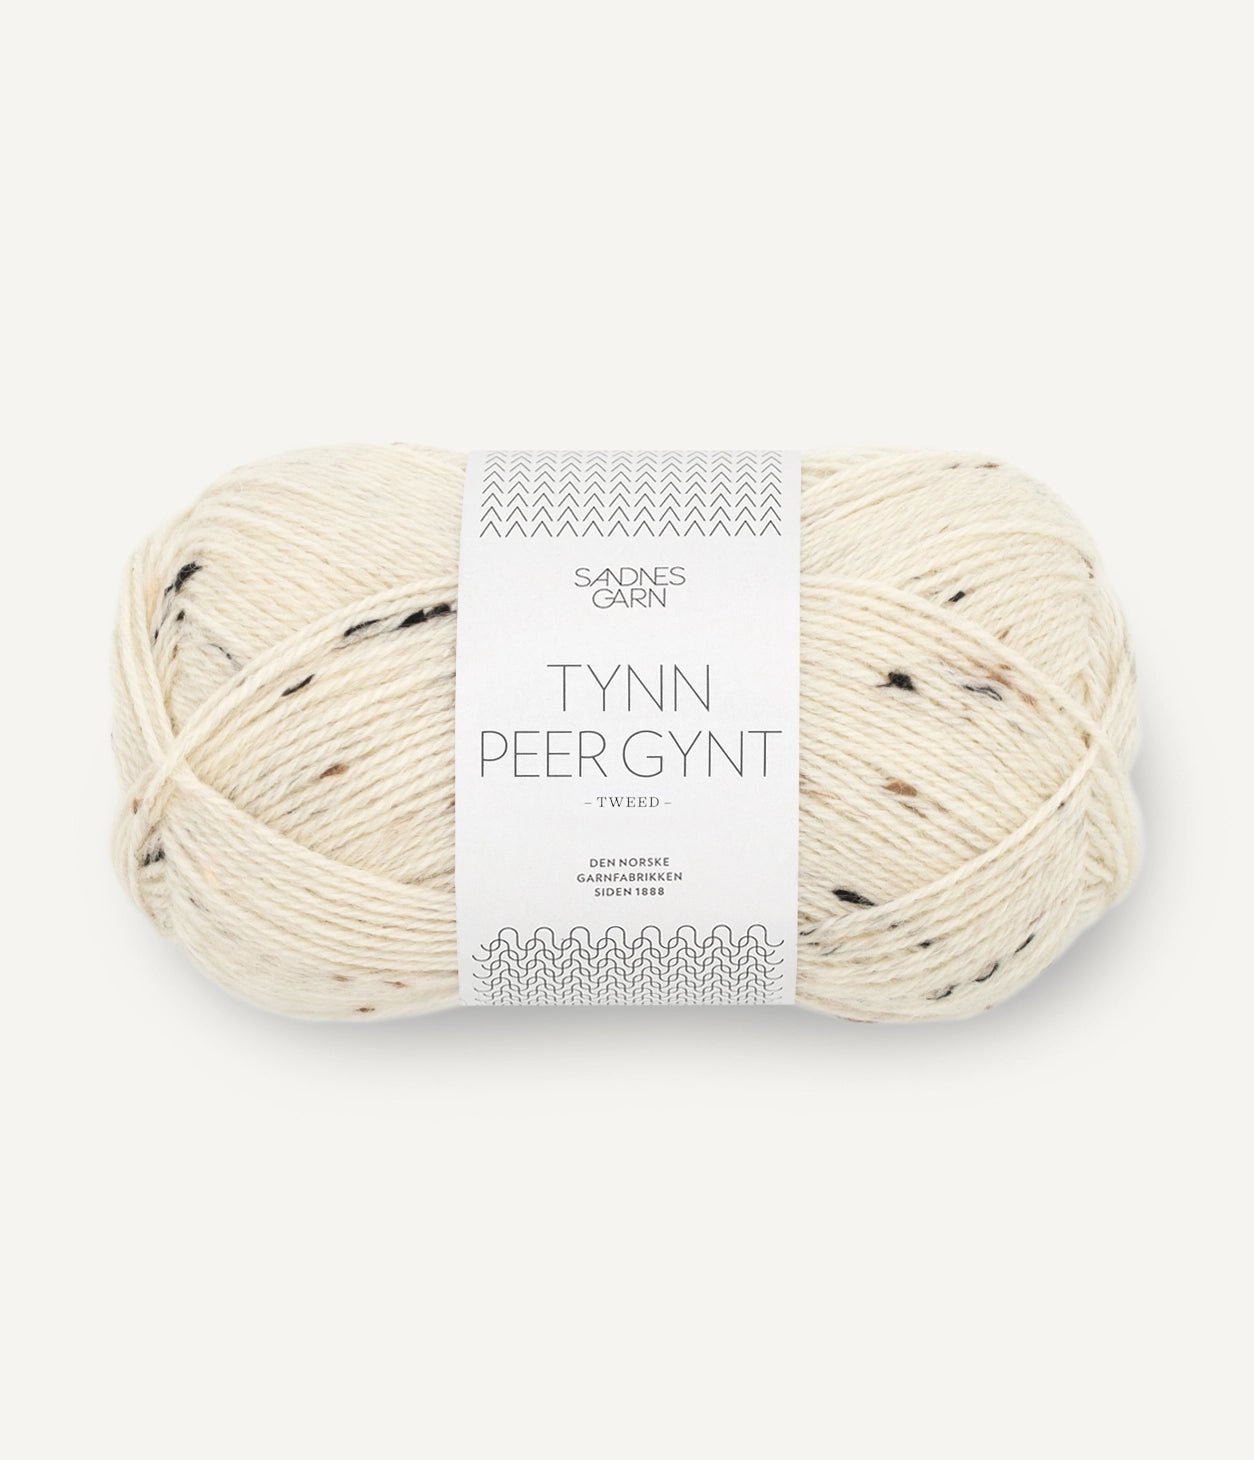 TYNN PEER GYNT von SANDNES jetzt online kaufen bei OONIQUE